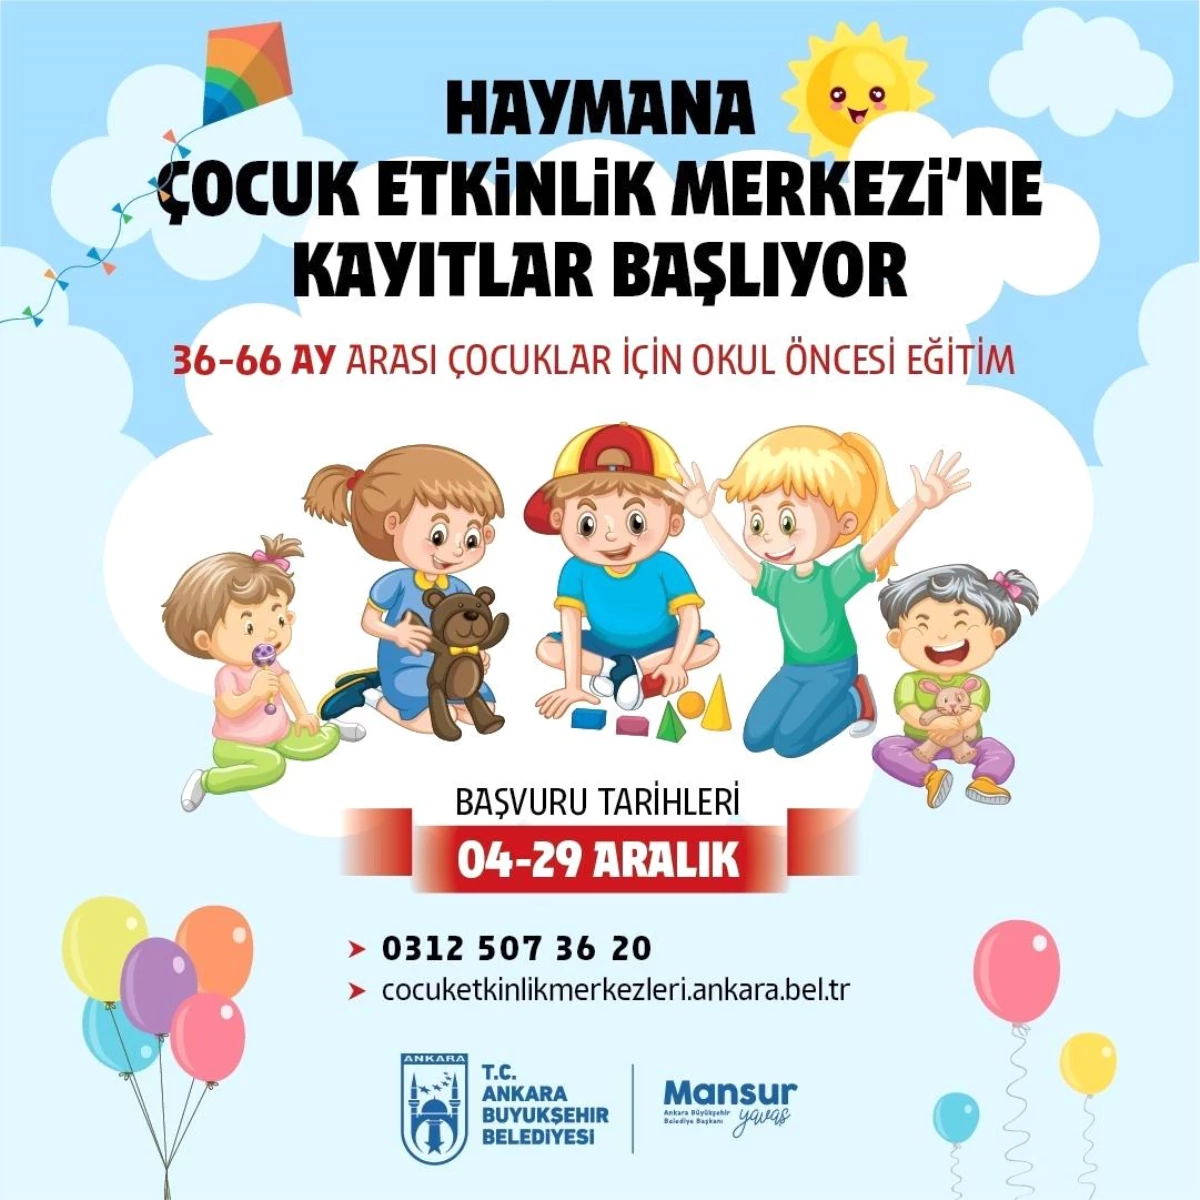 Ankara Büyükşehir Belediyesi Haymana Çocuk Etkinlik Merkezi için Kayıt Sürecini Başlattı